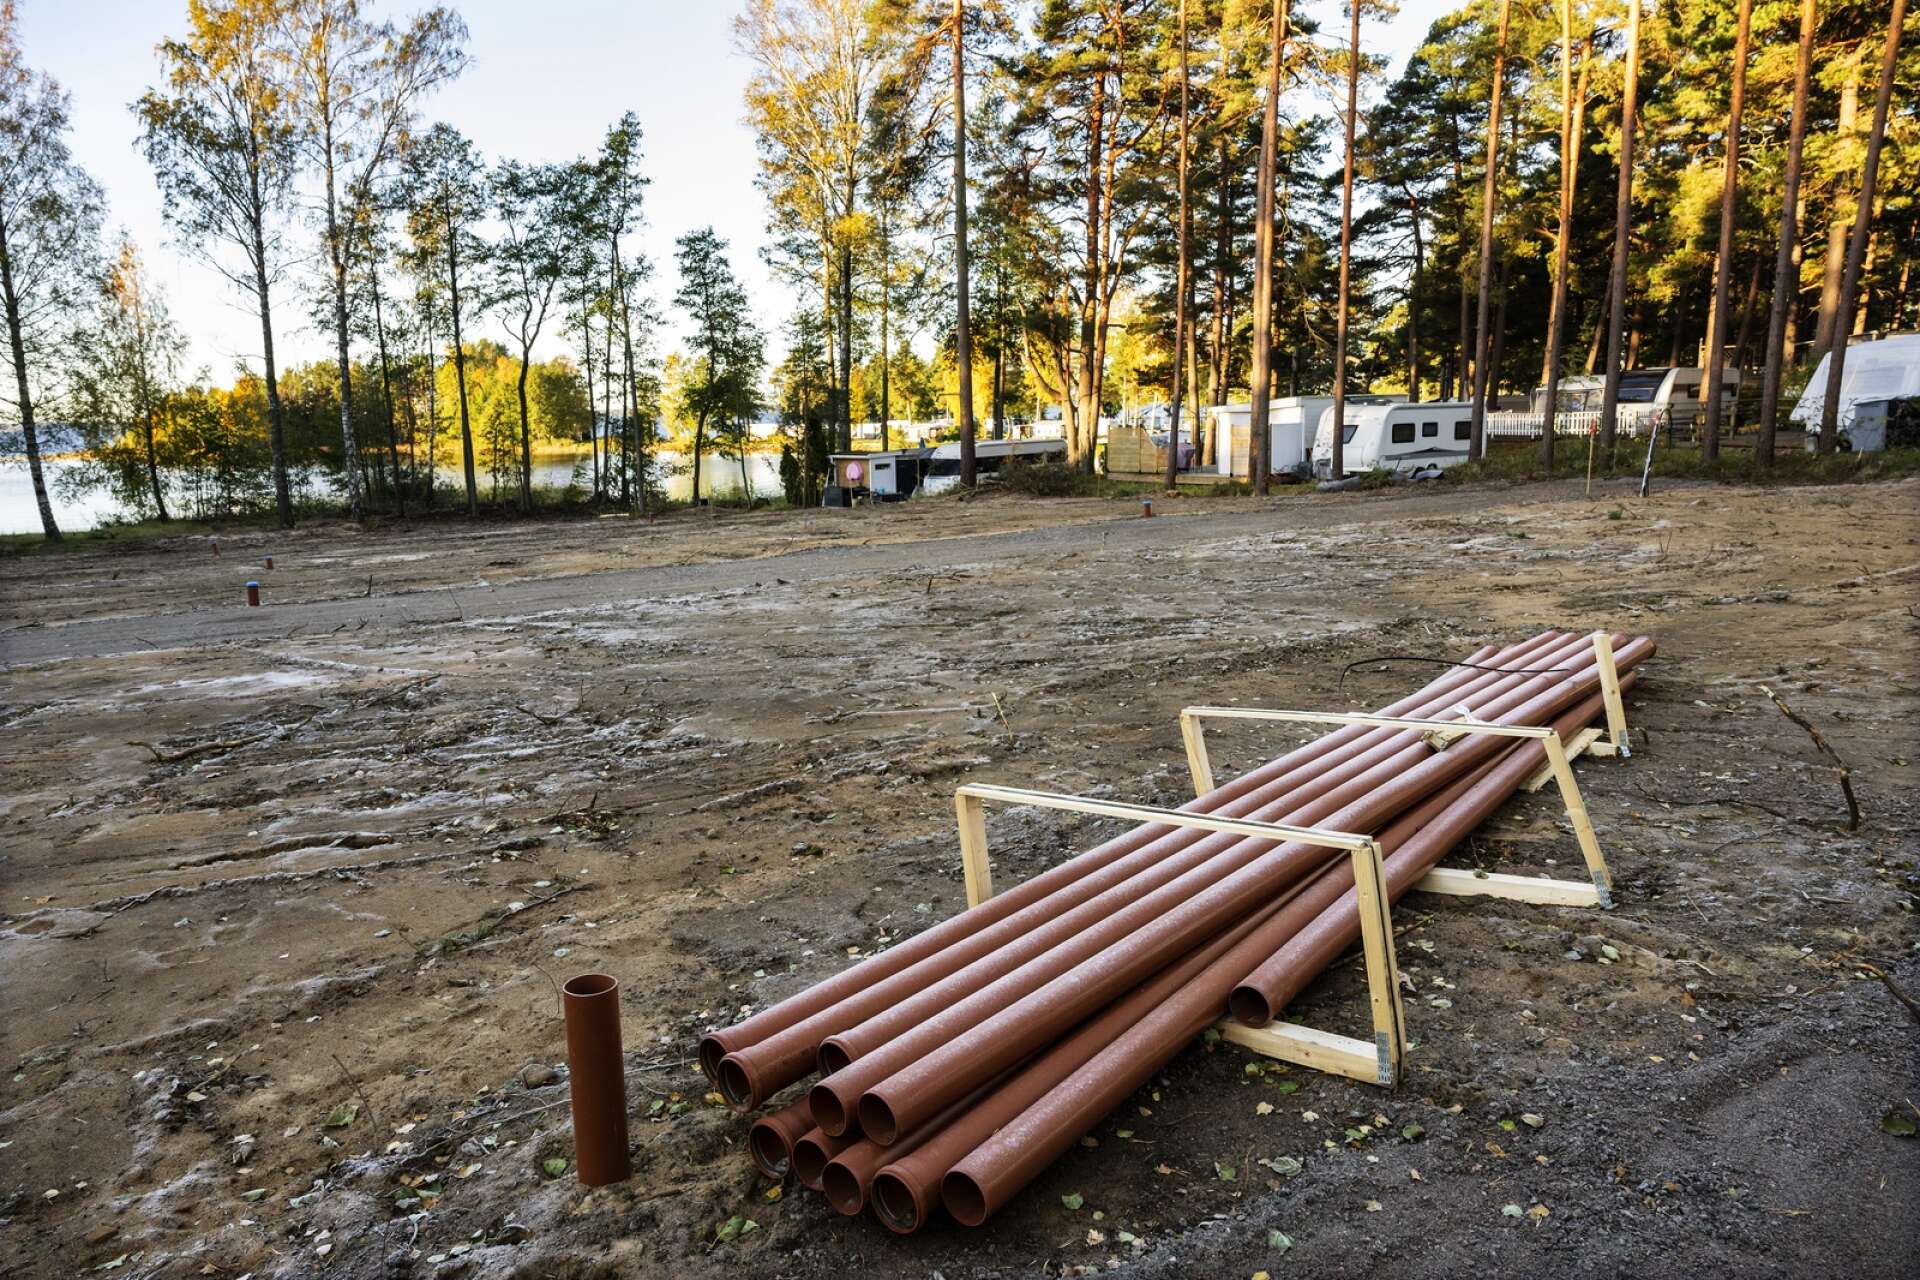 Ett helt nytt område håller på att ta form i de östra delarna av Bomstad. Här har skog tagits ned och ersatts av mark för campingplatser.